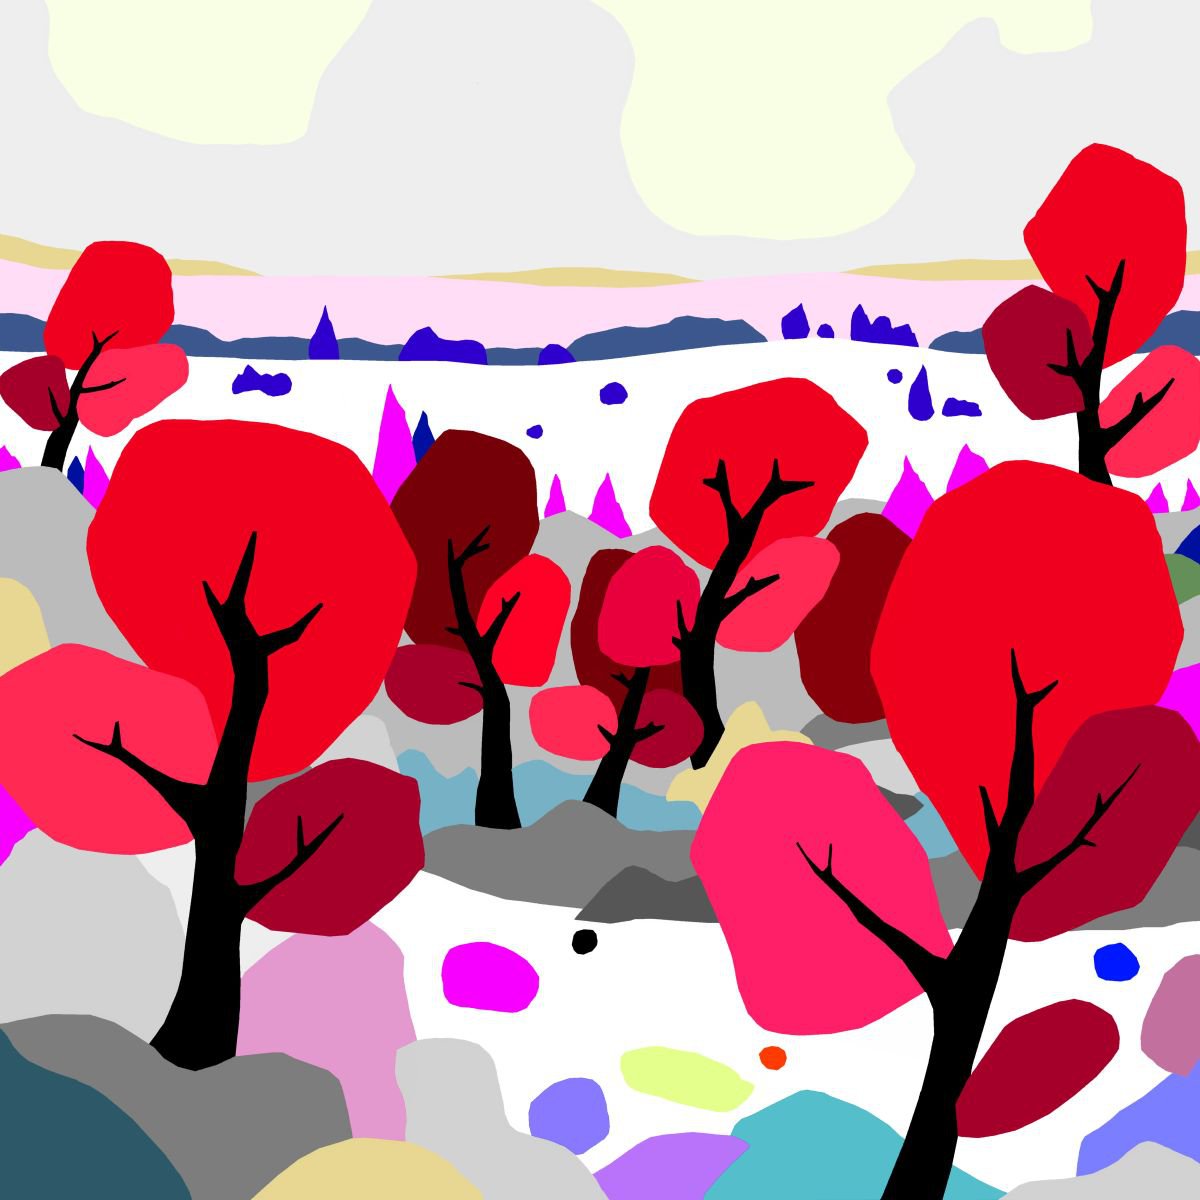 Red trees (arboles rojos) (pop art, landscape) by Alejos